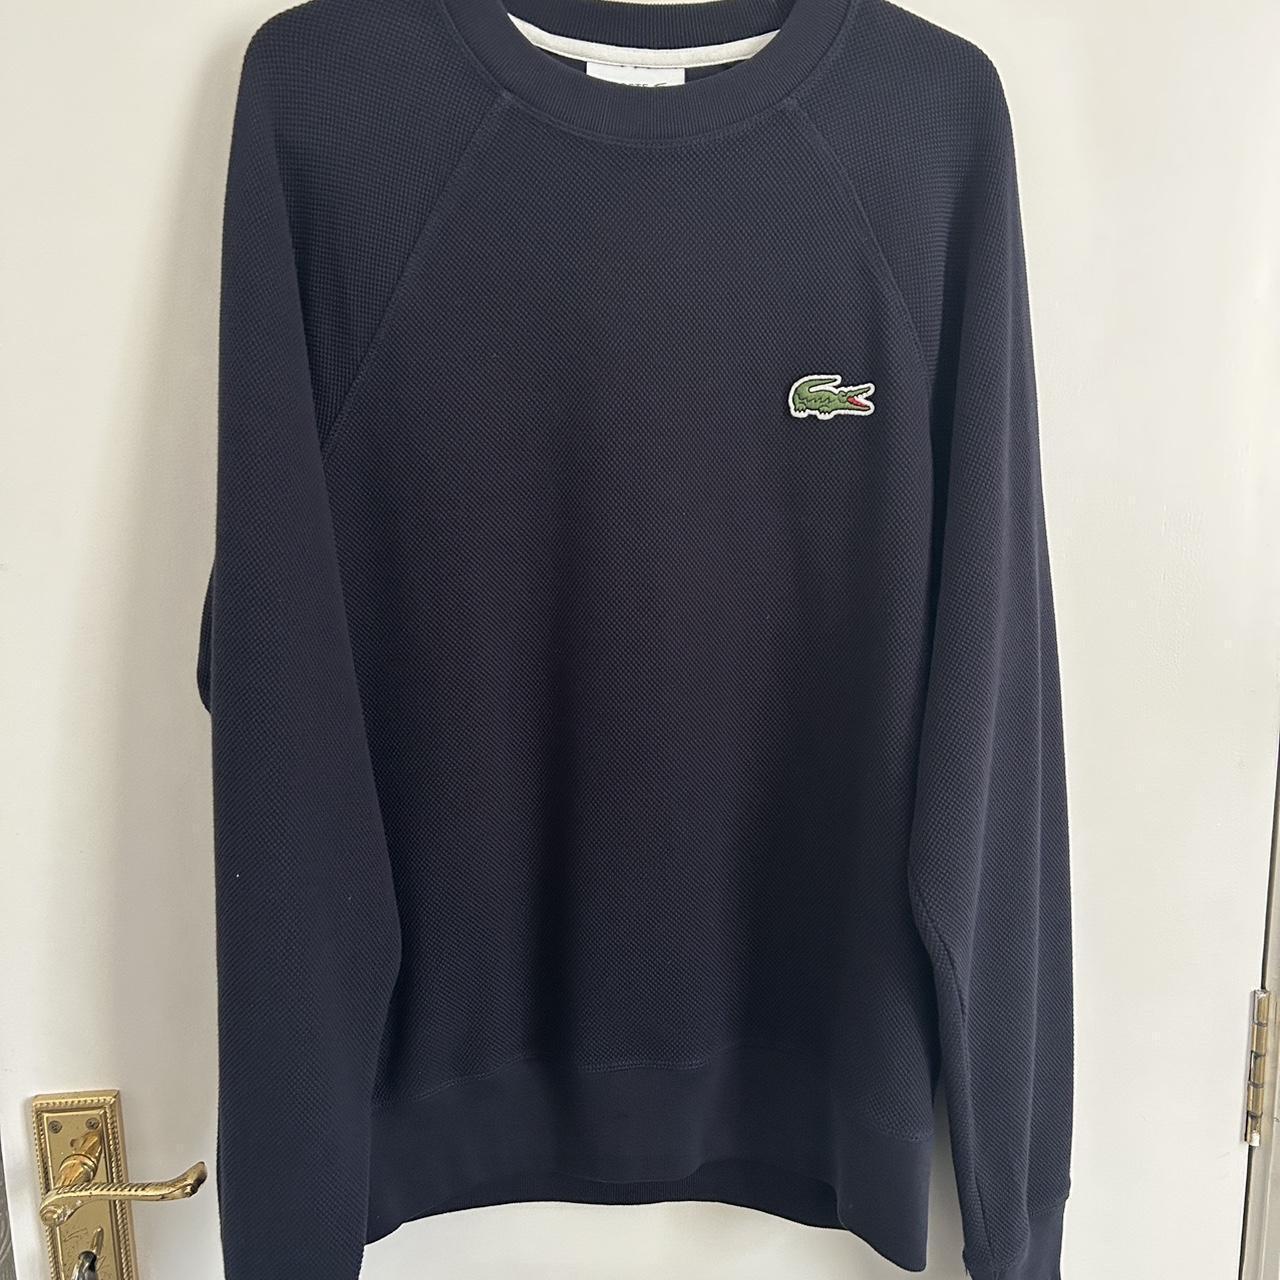 Vintage Lacoste Sweatshirt size XS - Depop